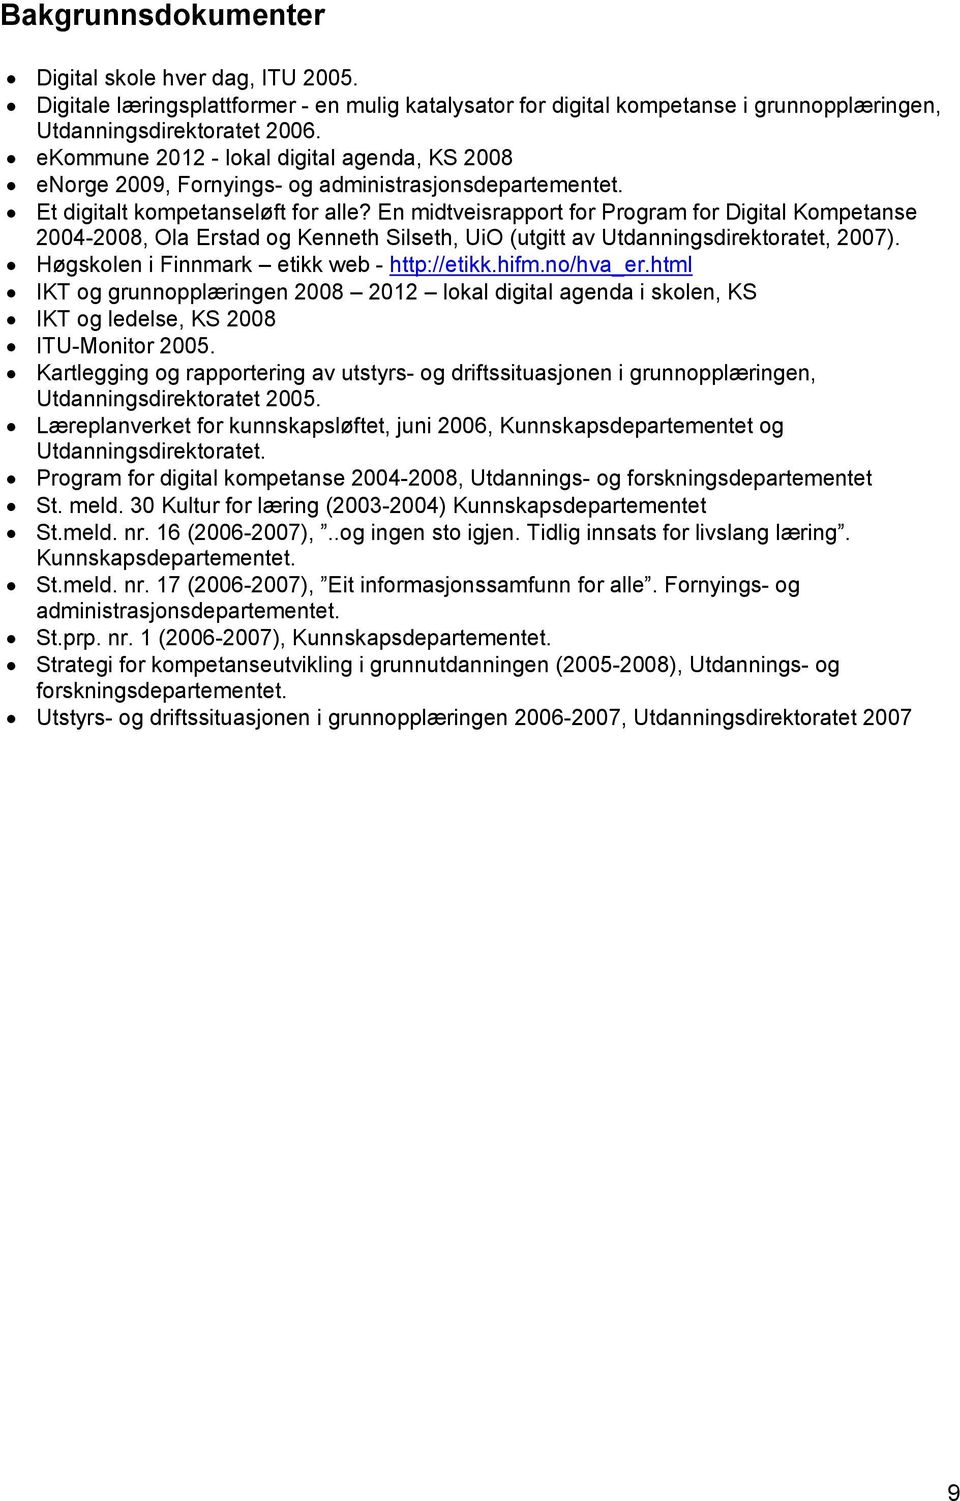 En midtveisrapport for Program for Digital Kompetanse 2004-2008, Ola Erstad og Kenneth Silseth, UiO (utgitt av Utdanningsdirektoratet, 2007). Høgskolen i Finnmark etikk web - http://etikk.hifm.